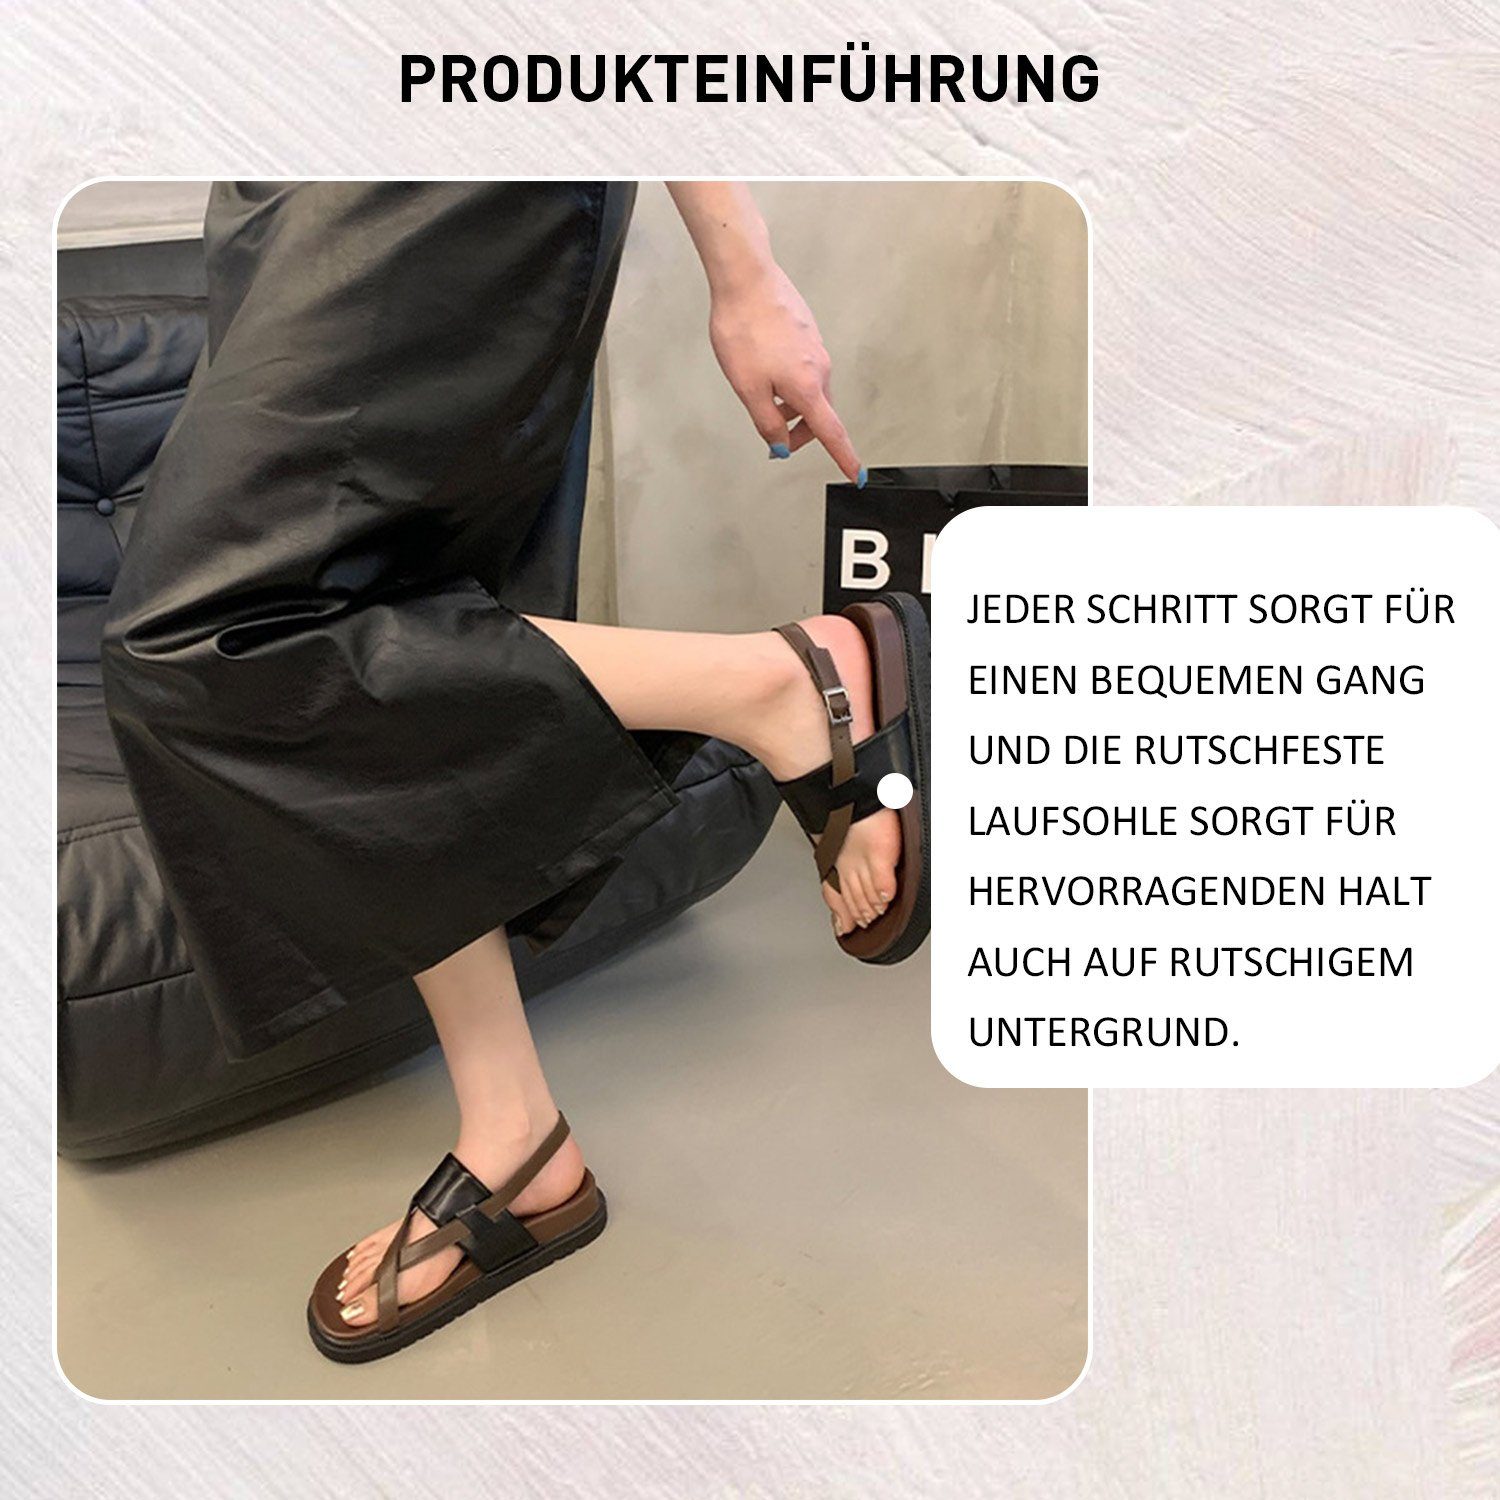 Damen Schwarz Zehentrenner Slides Sandale Sandalen Sommer Daisred Braun Outdoorsandale Pantolette und